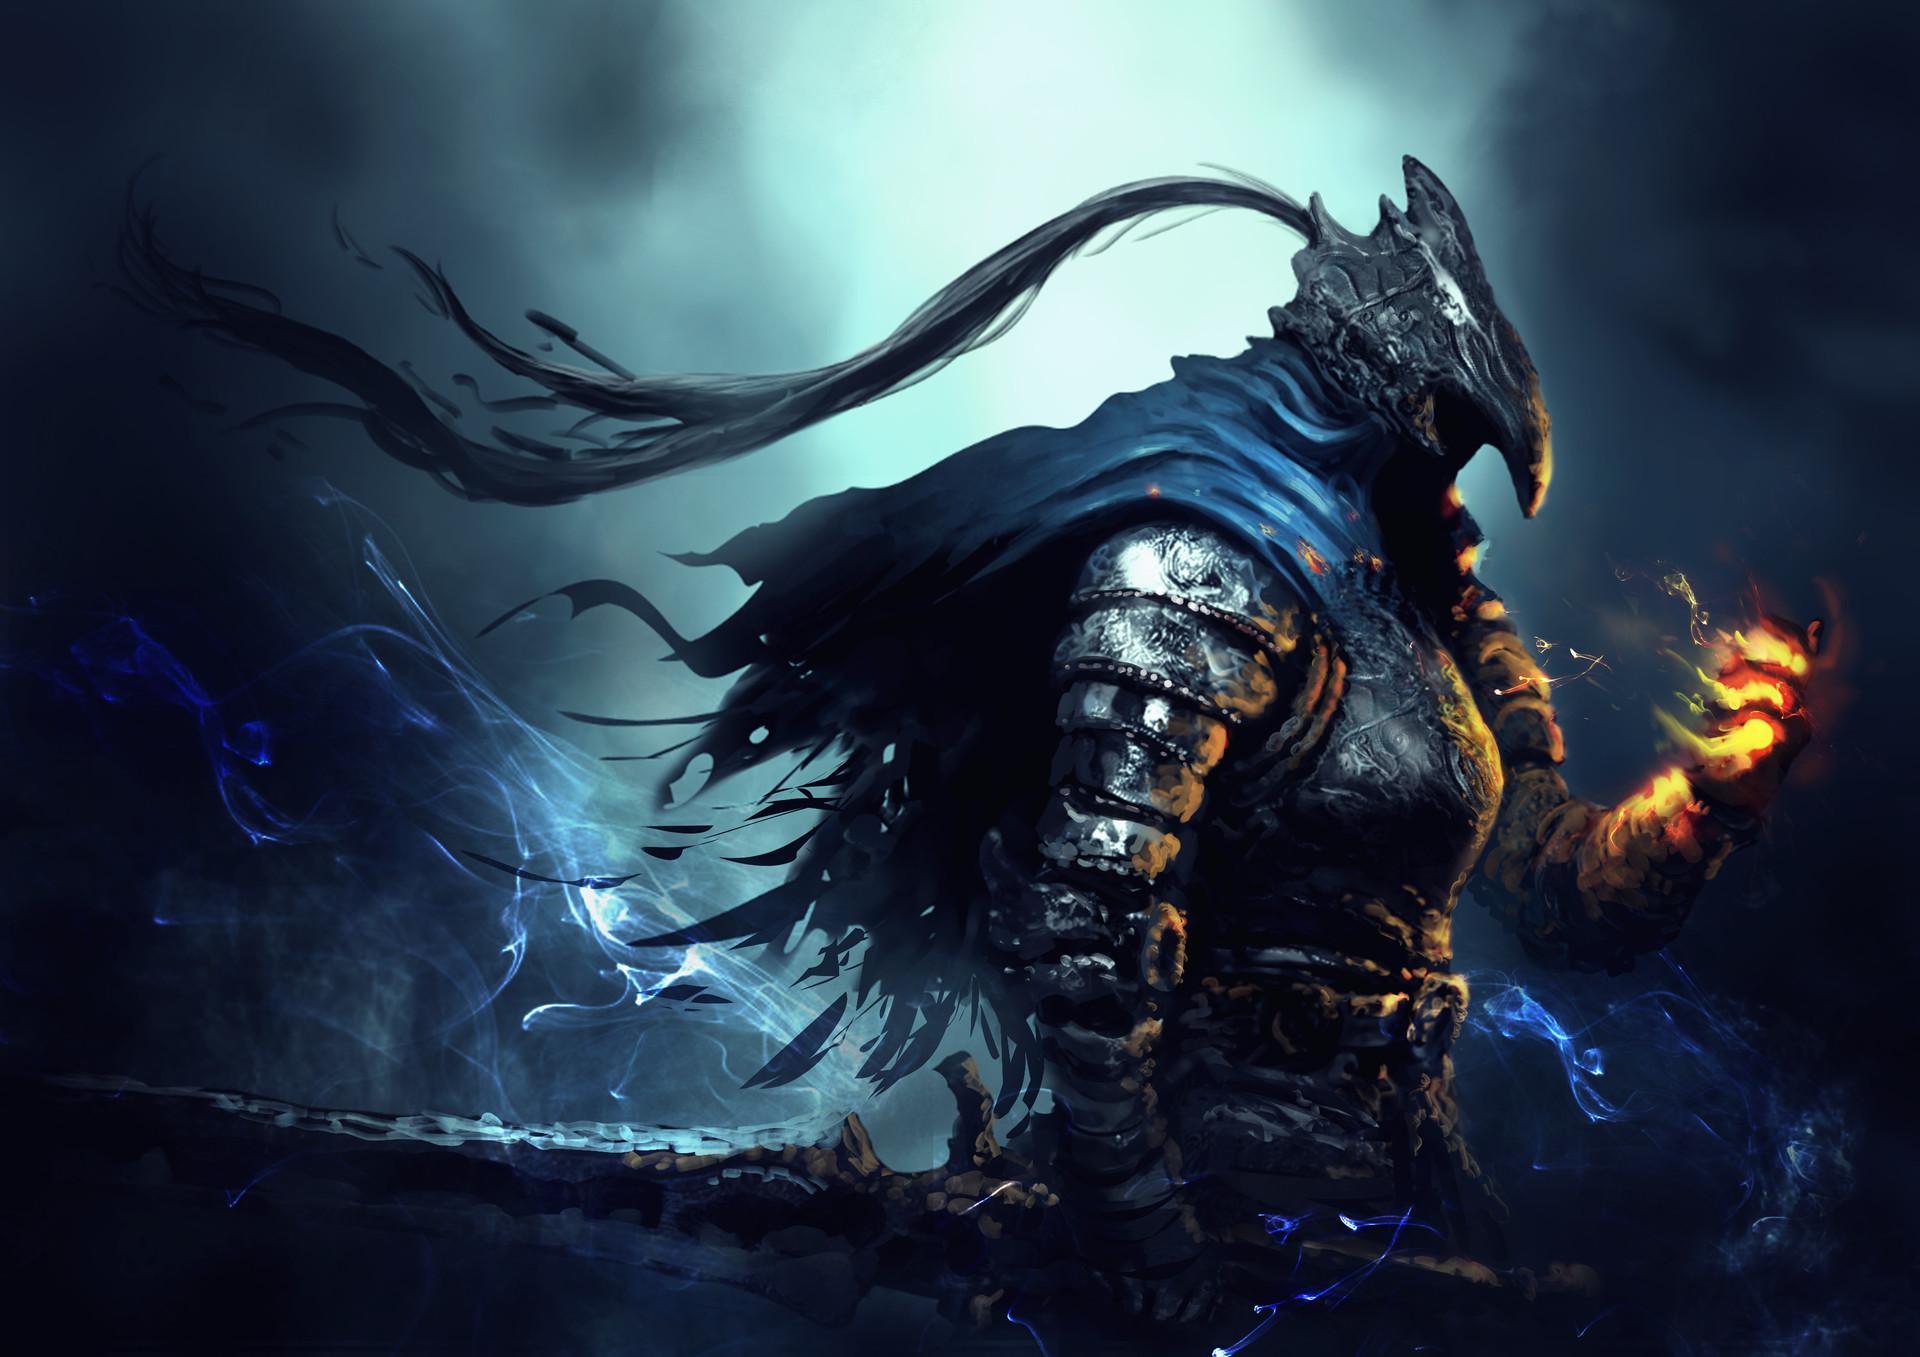 HD wallpaper, Video Game Art, Artorias The Abysswalker, Knight, Artorias, Dark Souls, Fantasy Art